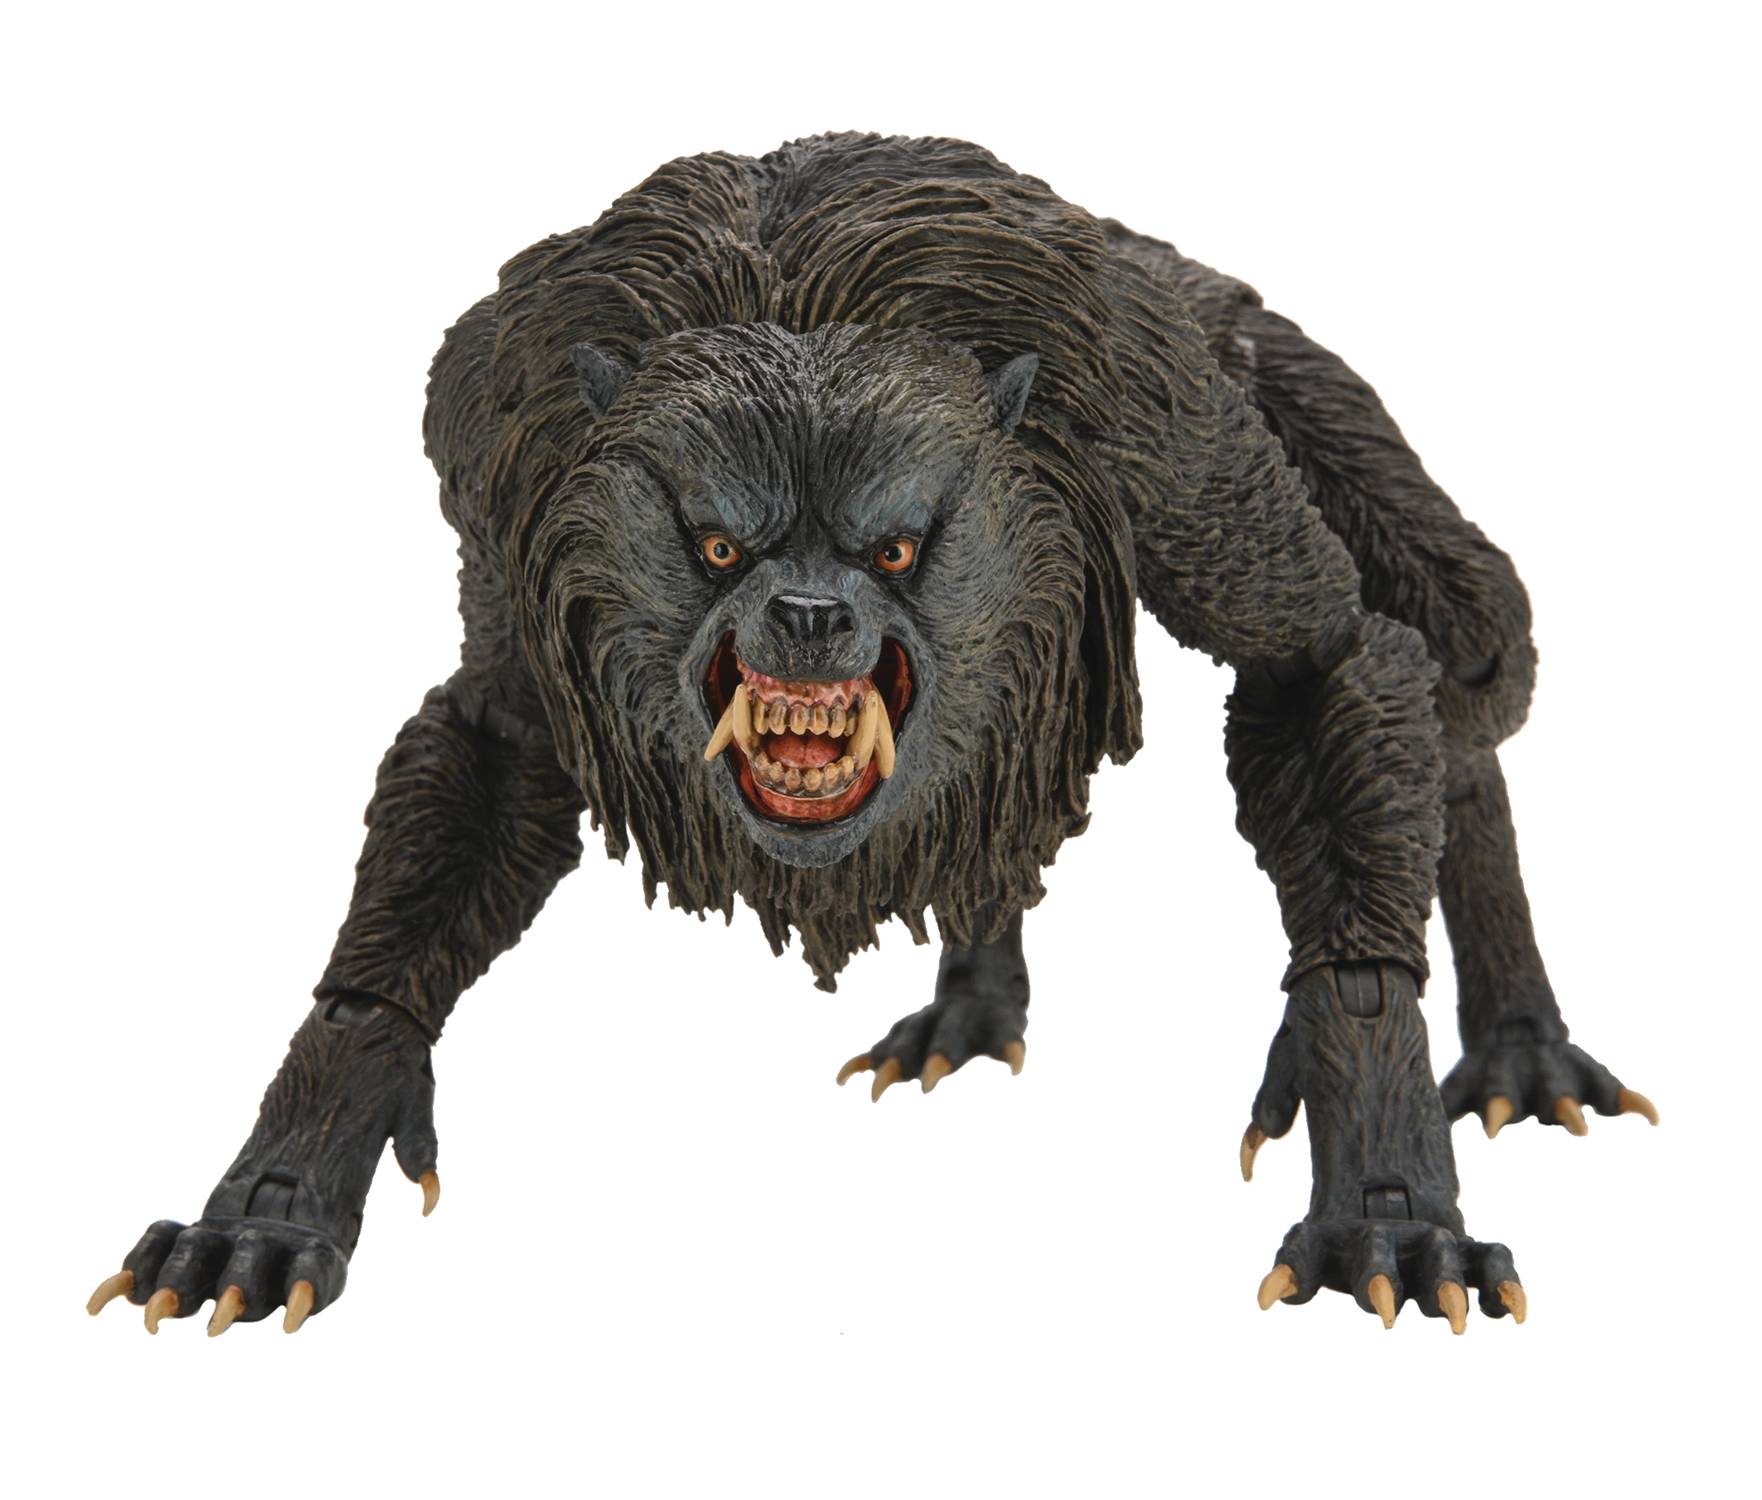 Werewolf of London - Wikipedia